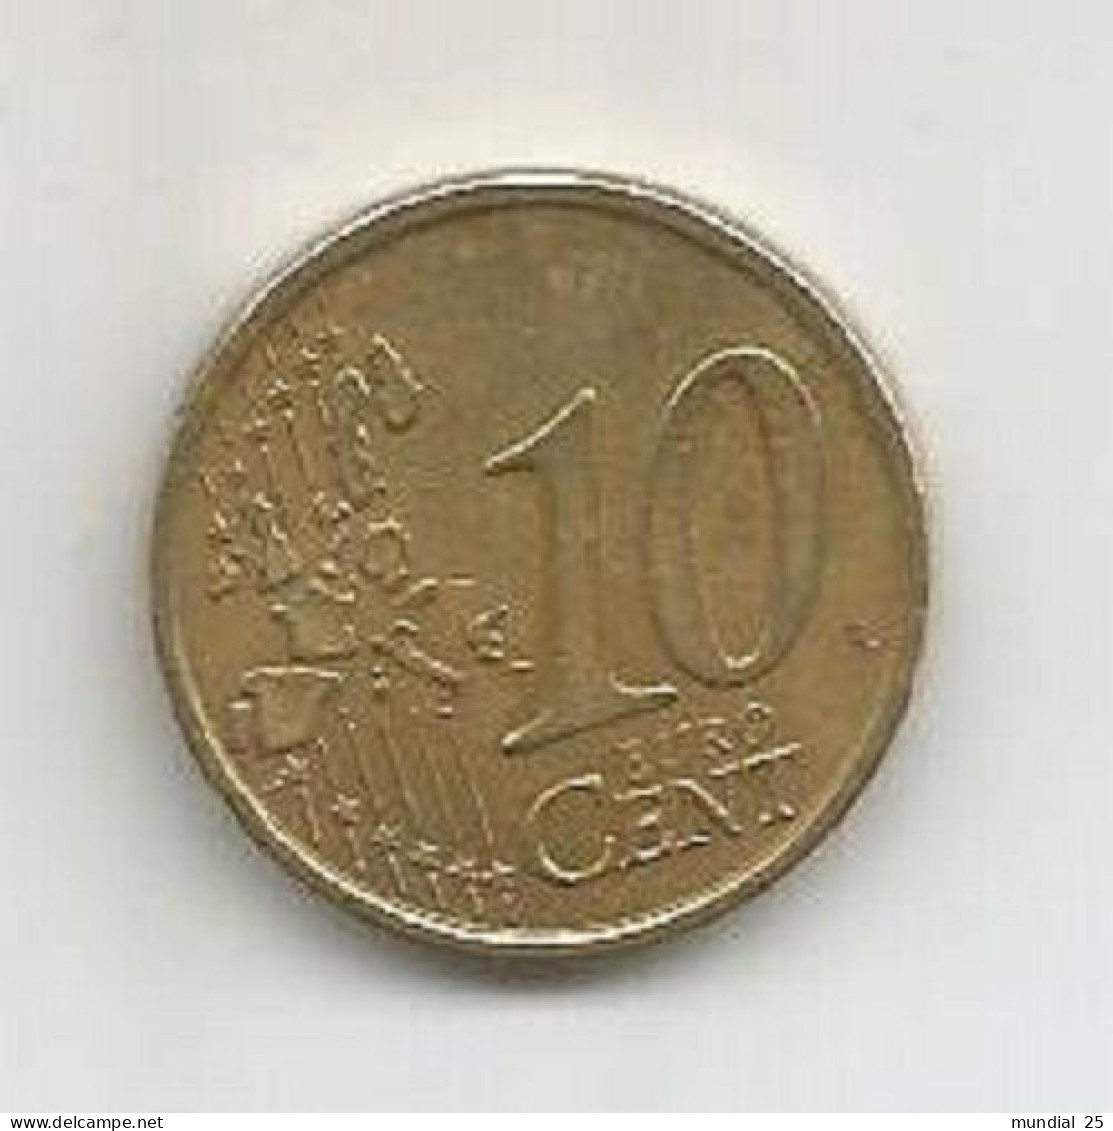 ITALY 10 EURO CENT 2006 (R) - Italy